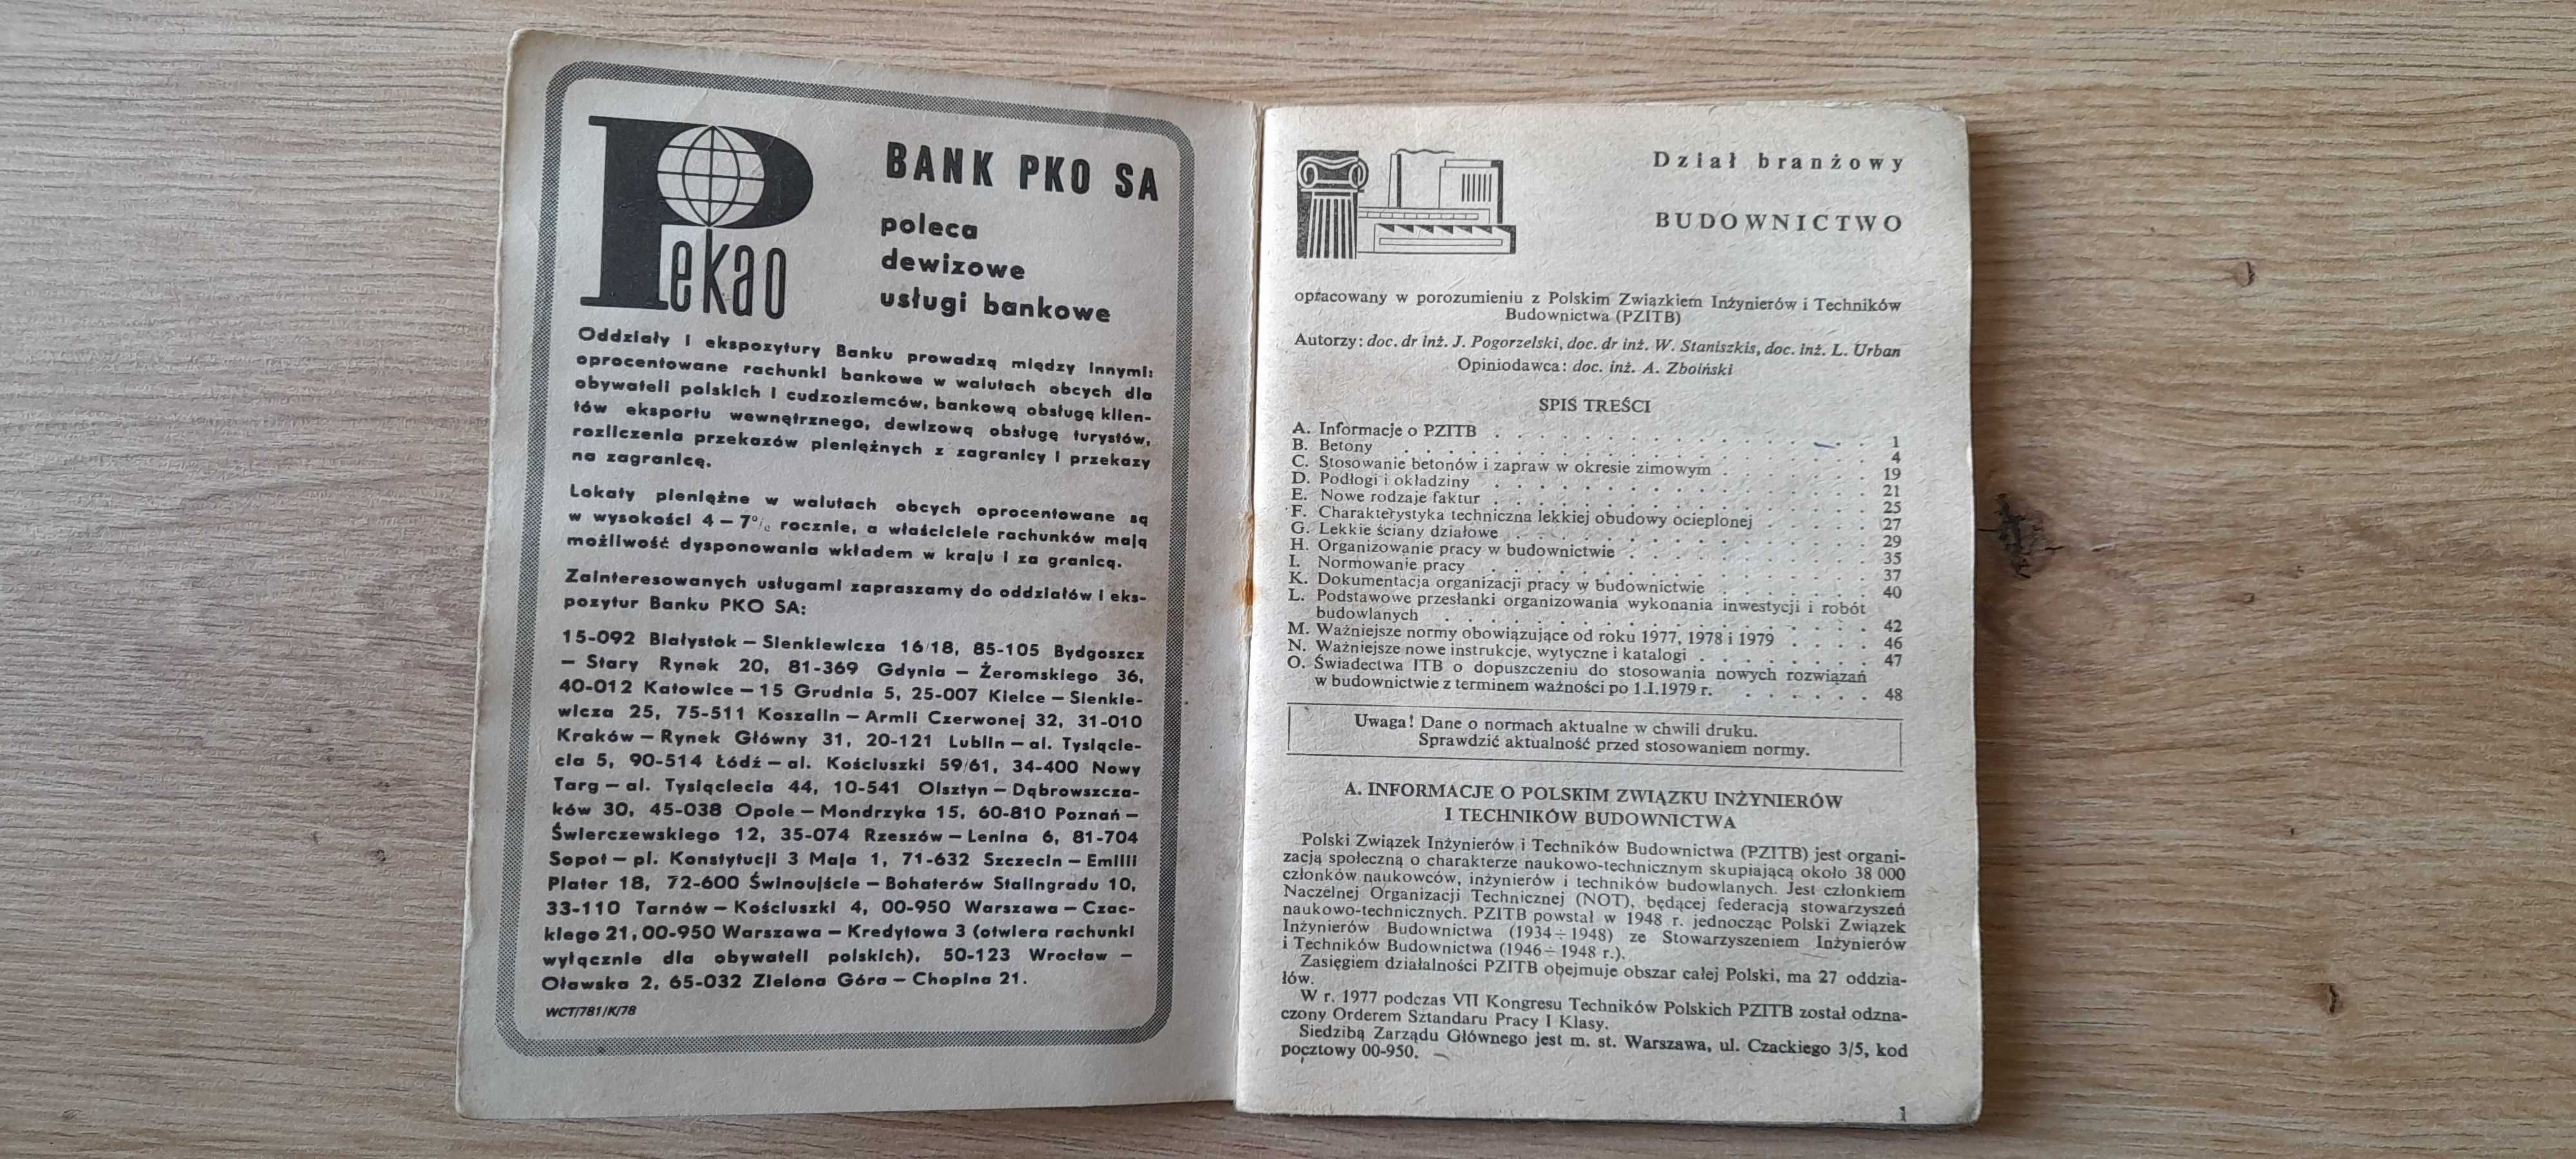 "Wkładka do Terminarza Technika 1979: BUDOWNICTWO"